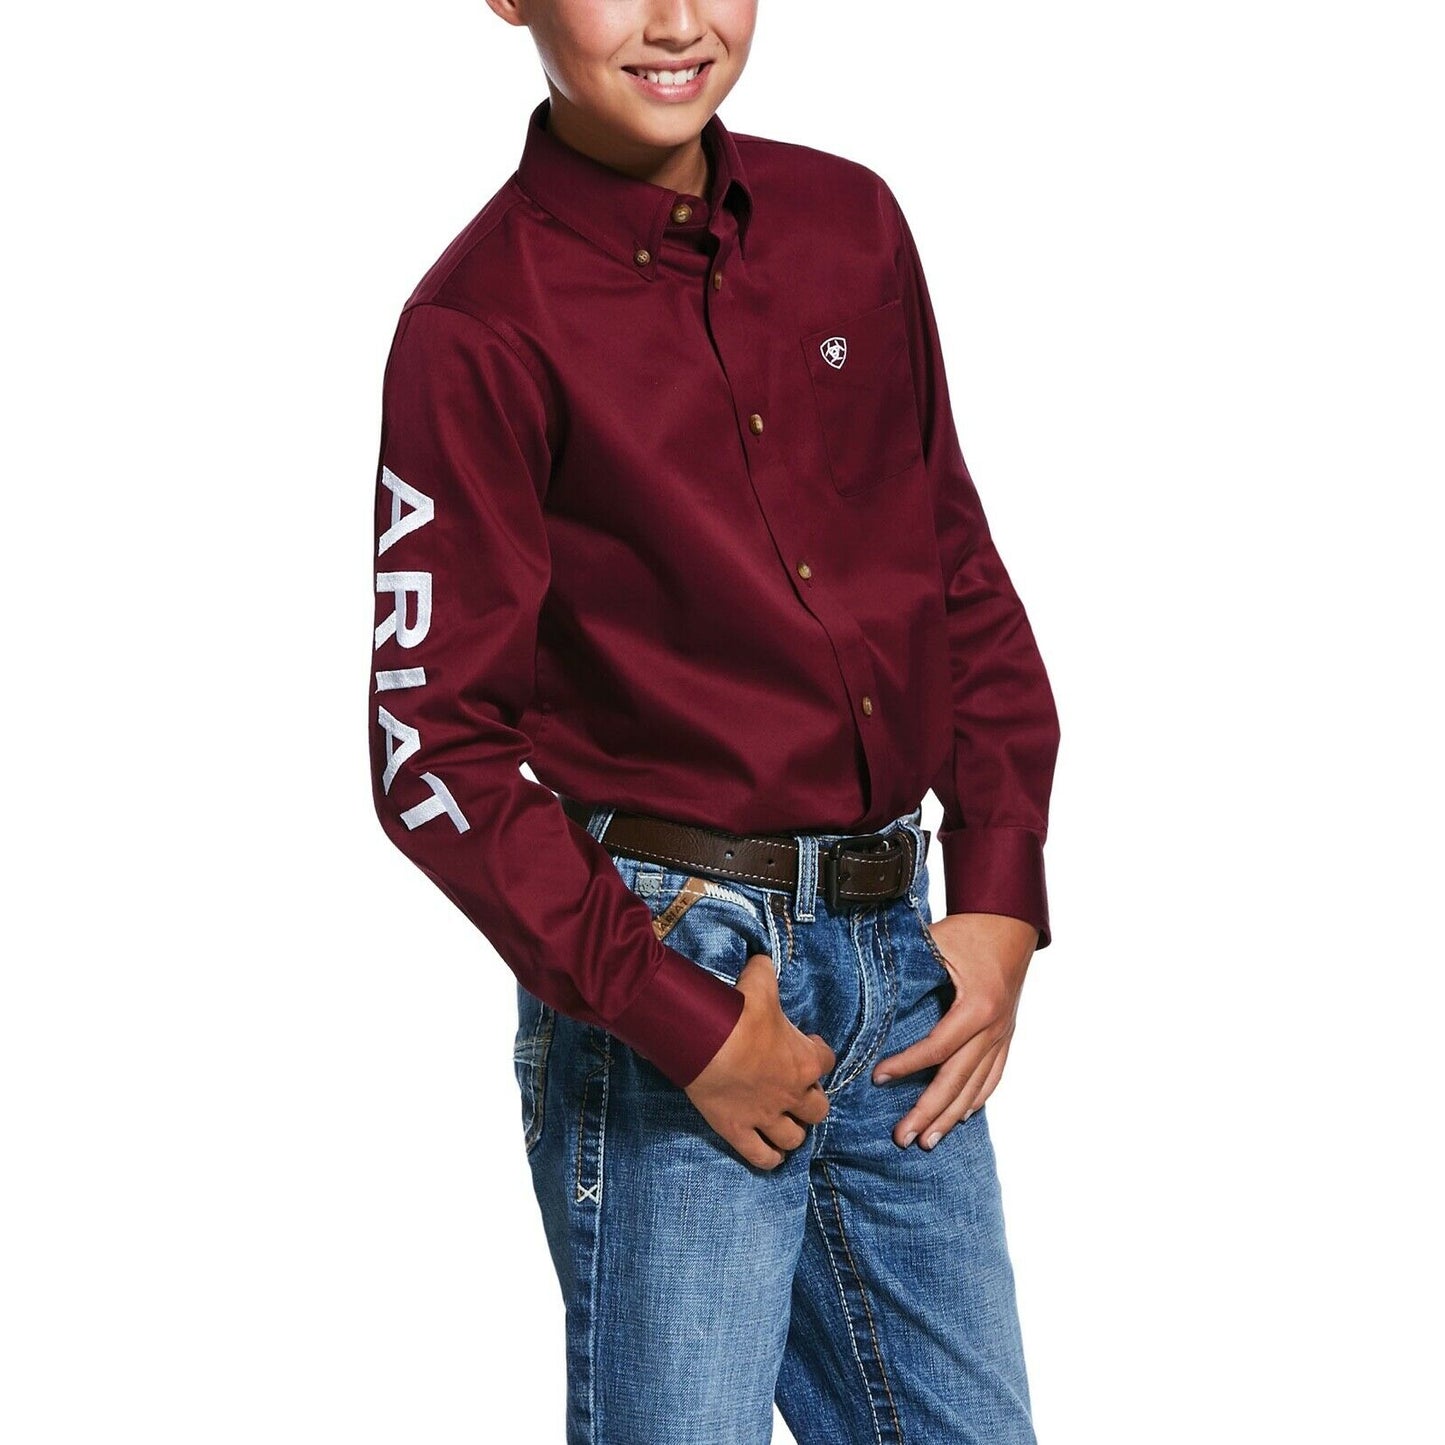 Ariat® Boy's Team Logo Burgundy Long Sleeve Button-Up Shirt 10030163